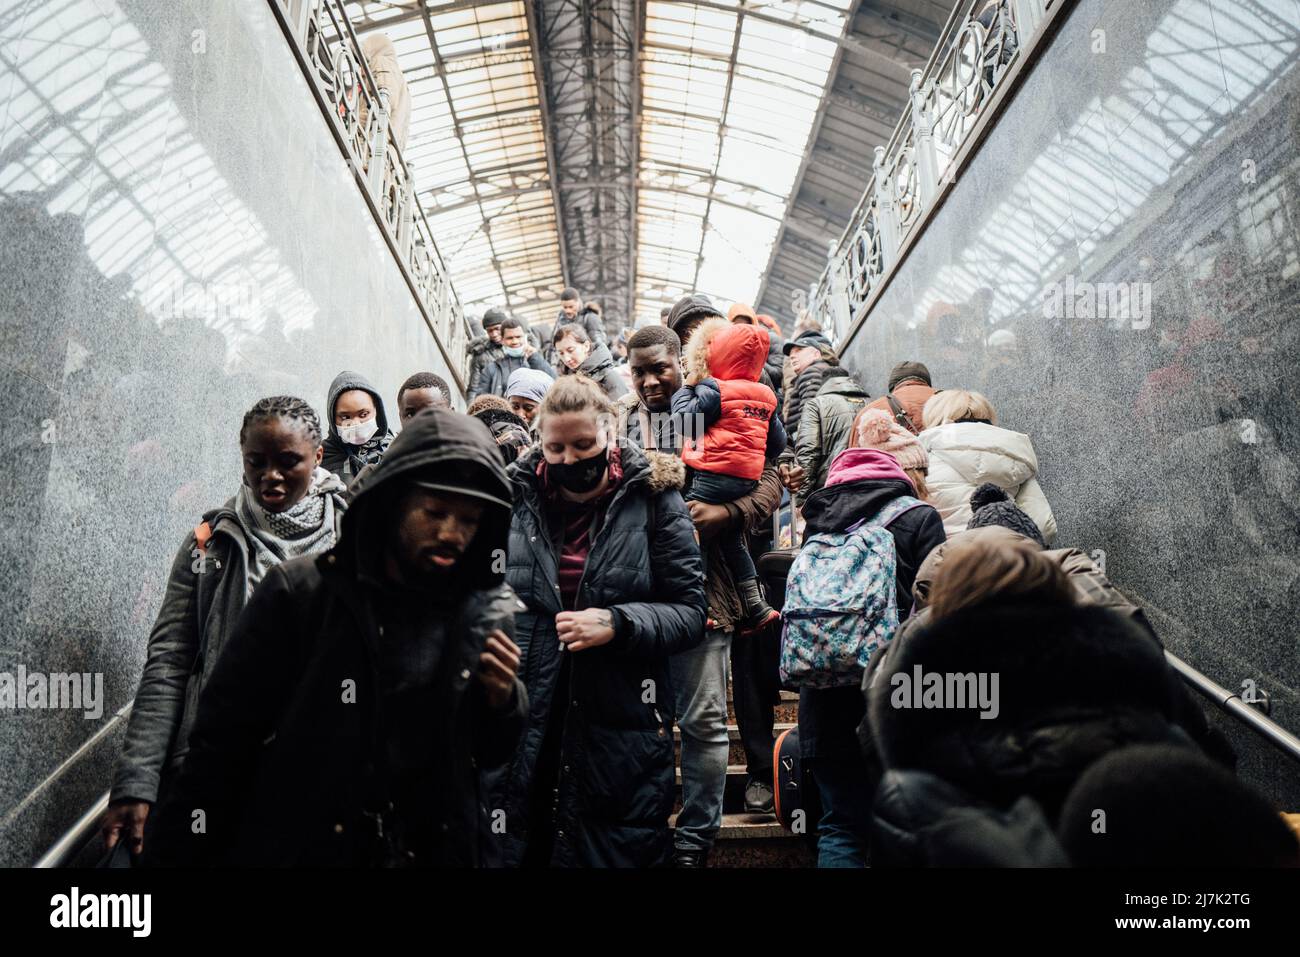 Adrien Vautier / Le Pictorium - Russische Invasion in der Ukraine - 26/2/2022 - Ukraine / Lviv - am Samstag, den 26. Februar in Lviv, der Zugang zum p Stockfoto